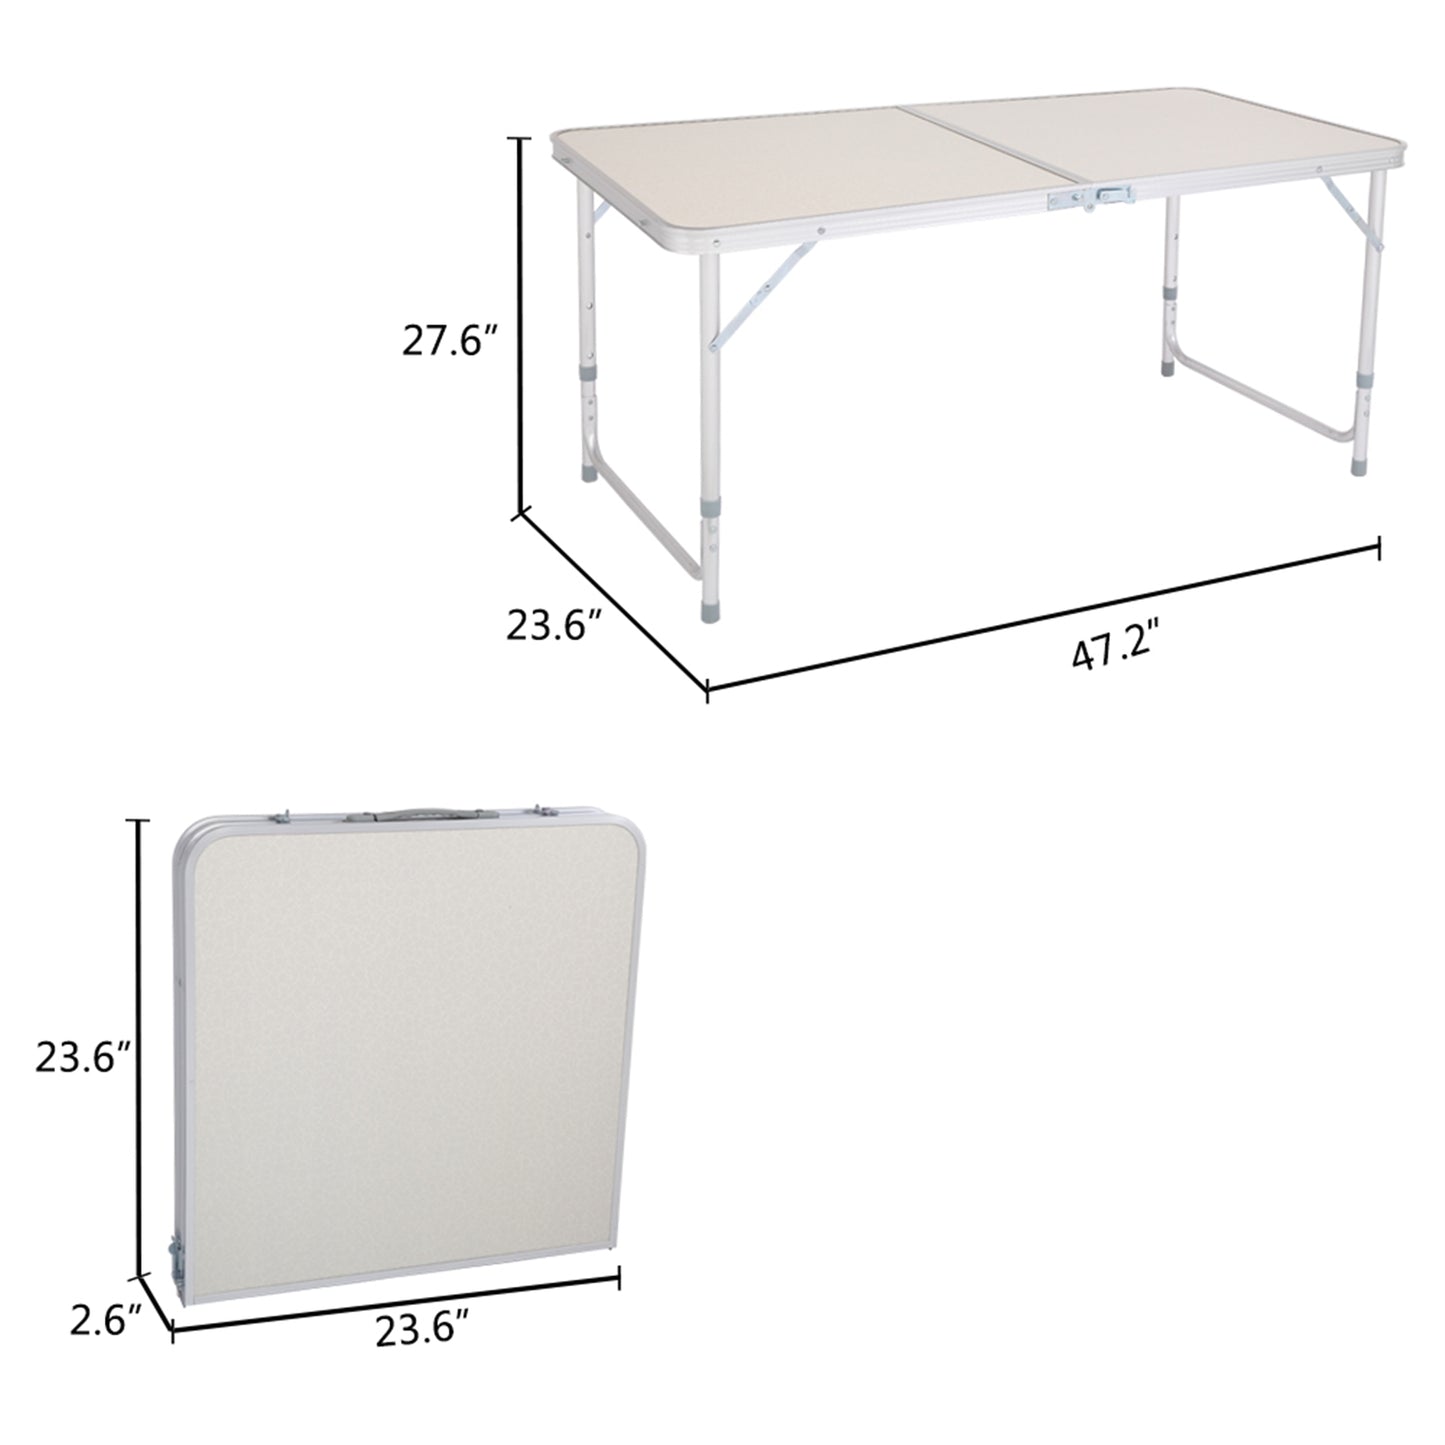 Portable Multipurpose Folding Table 120 x 60 x 70 4Ft